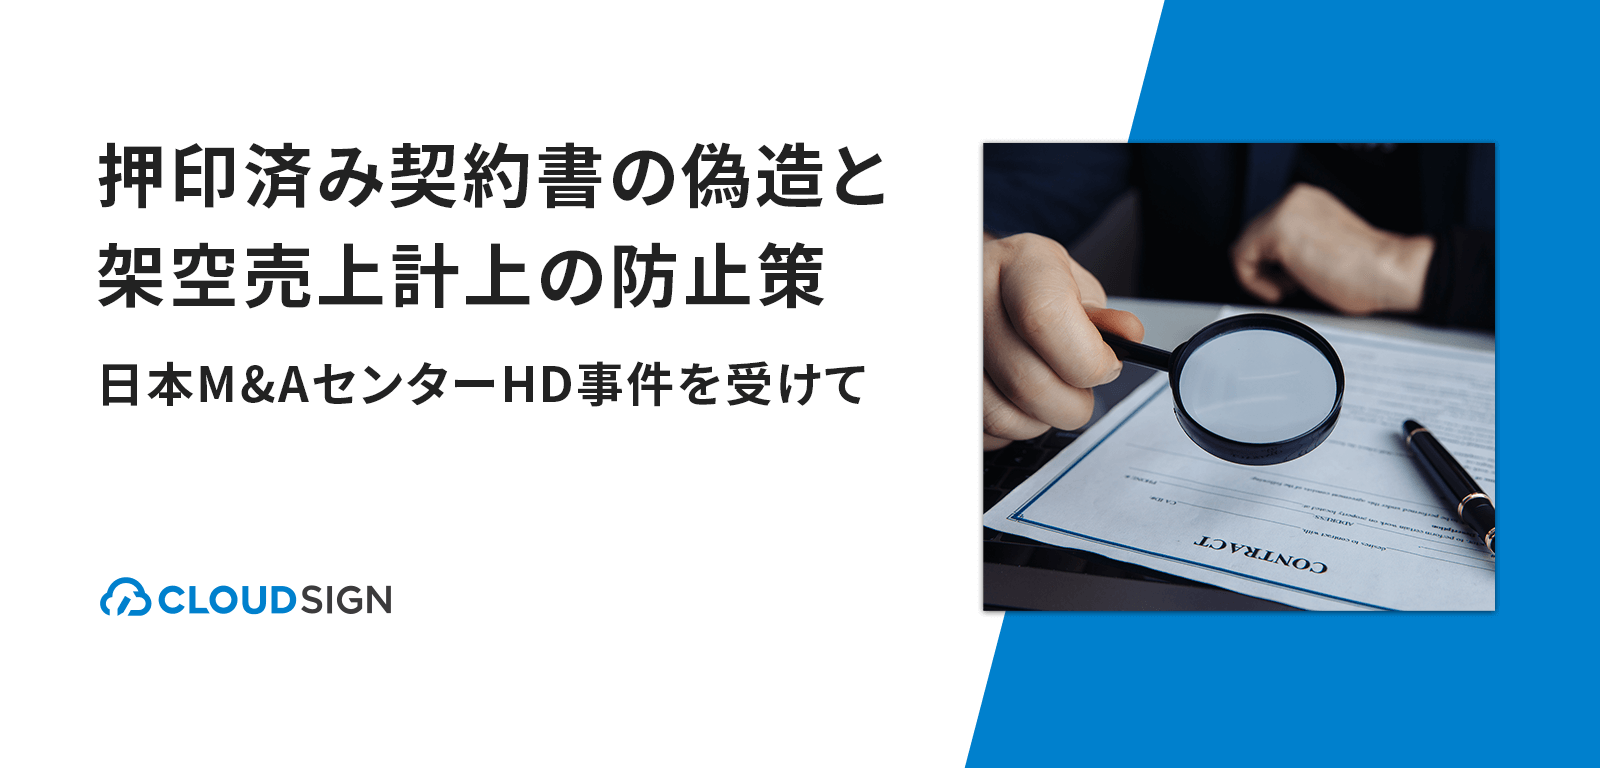 押印済み契約書の偽造と架空売上計上の防止策—日本M&AセンターHD事件を受けて